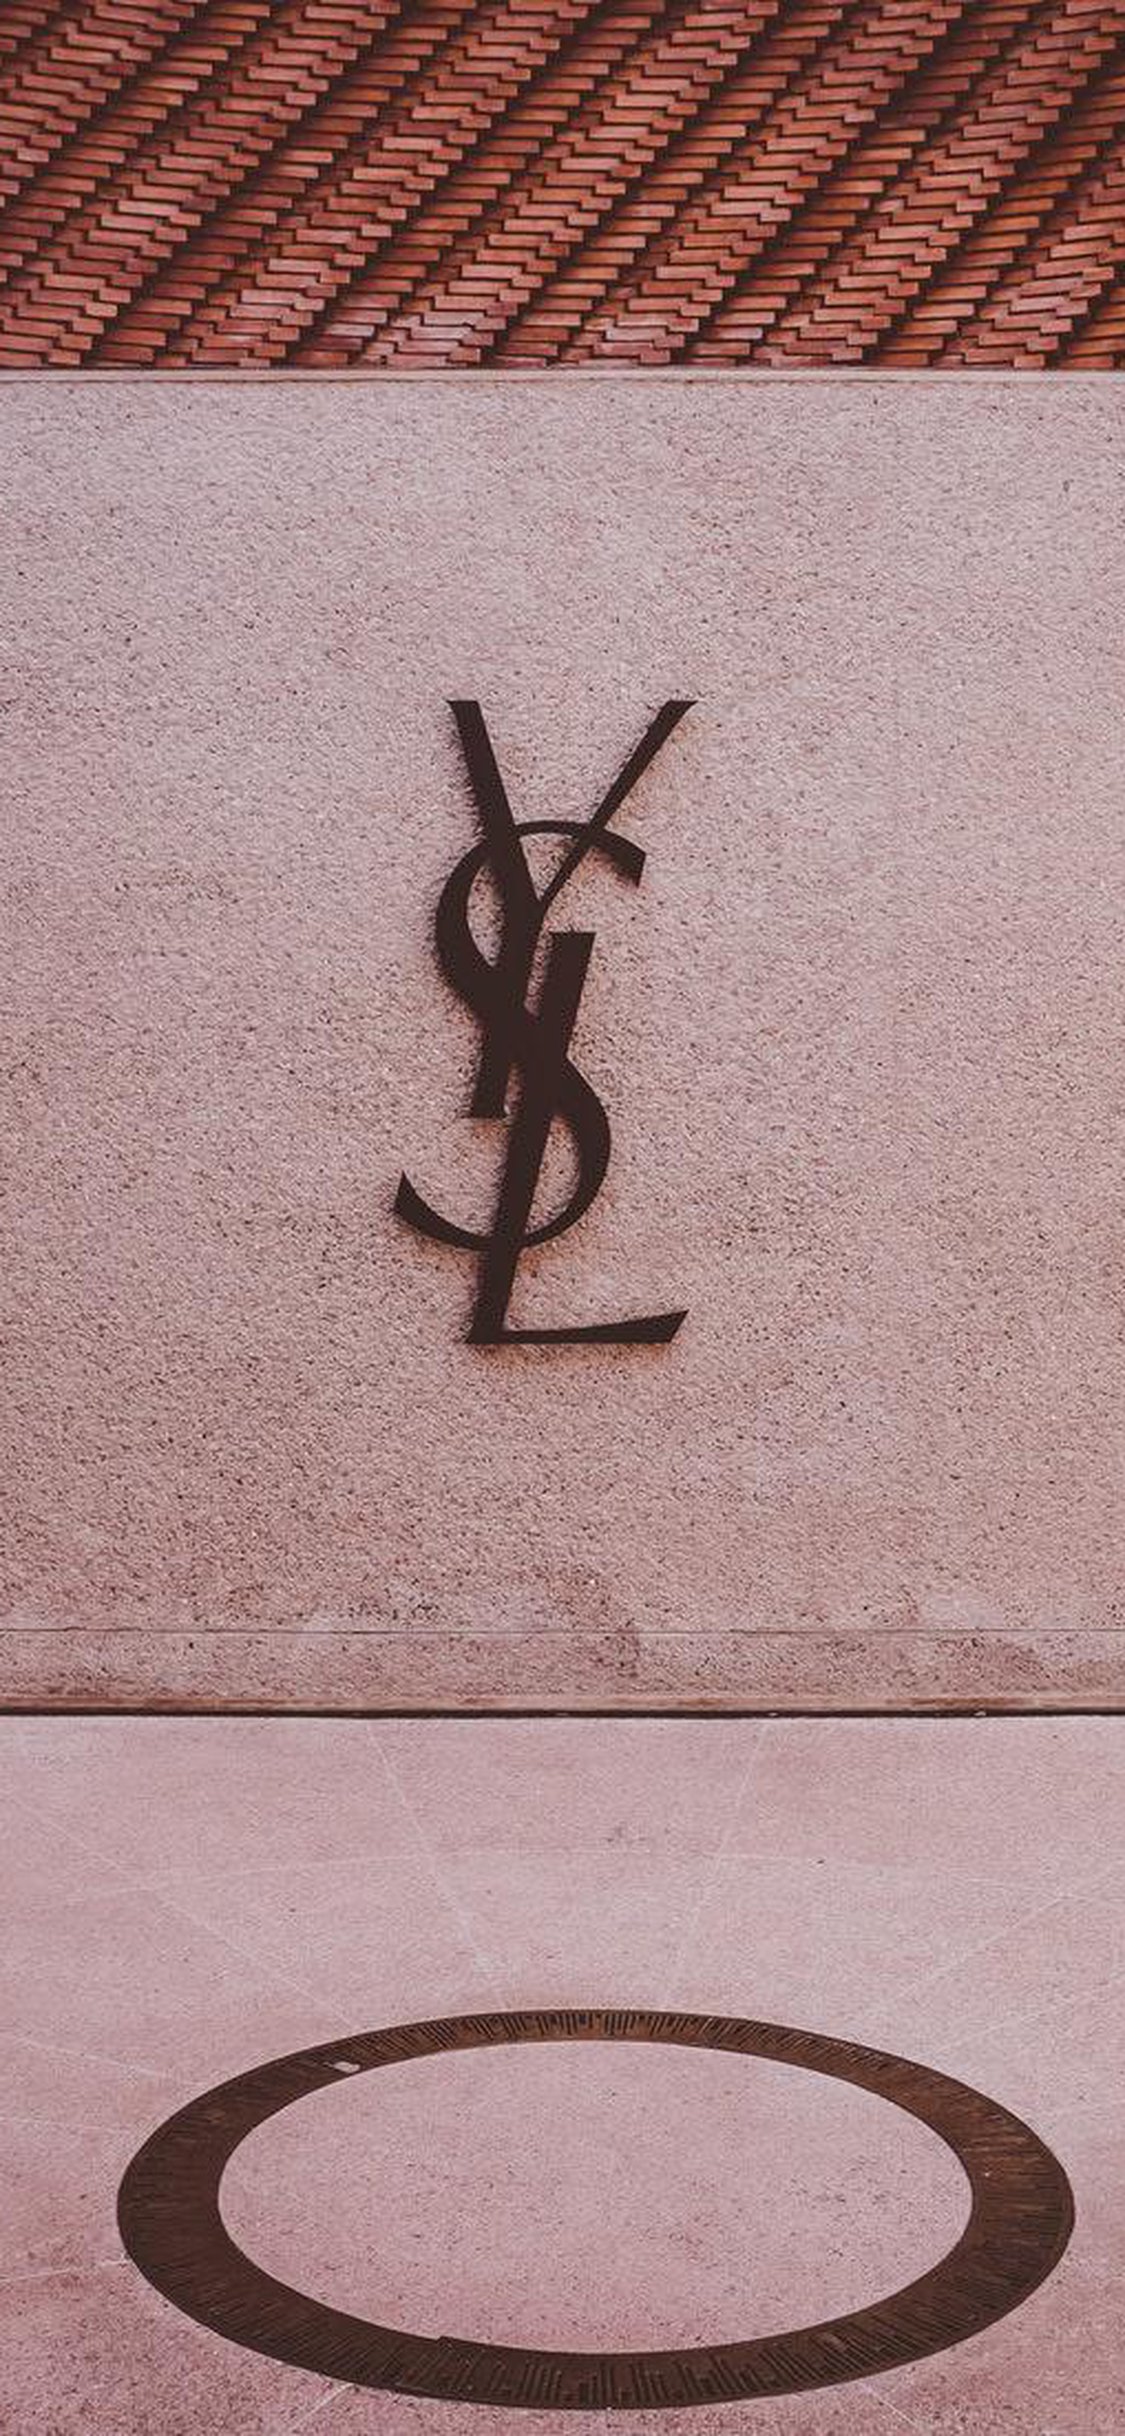 Yves Saint Laurent Iphone 6 Wallpaper Off 73 Best Deals Online